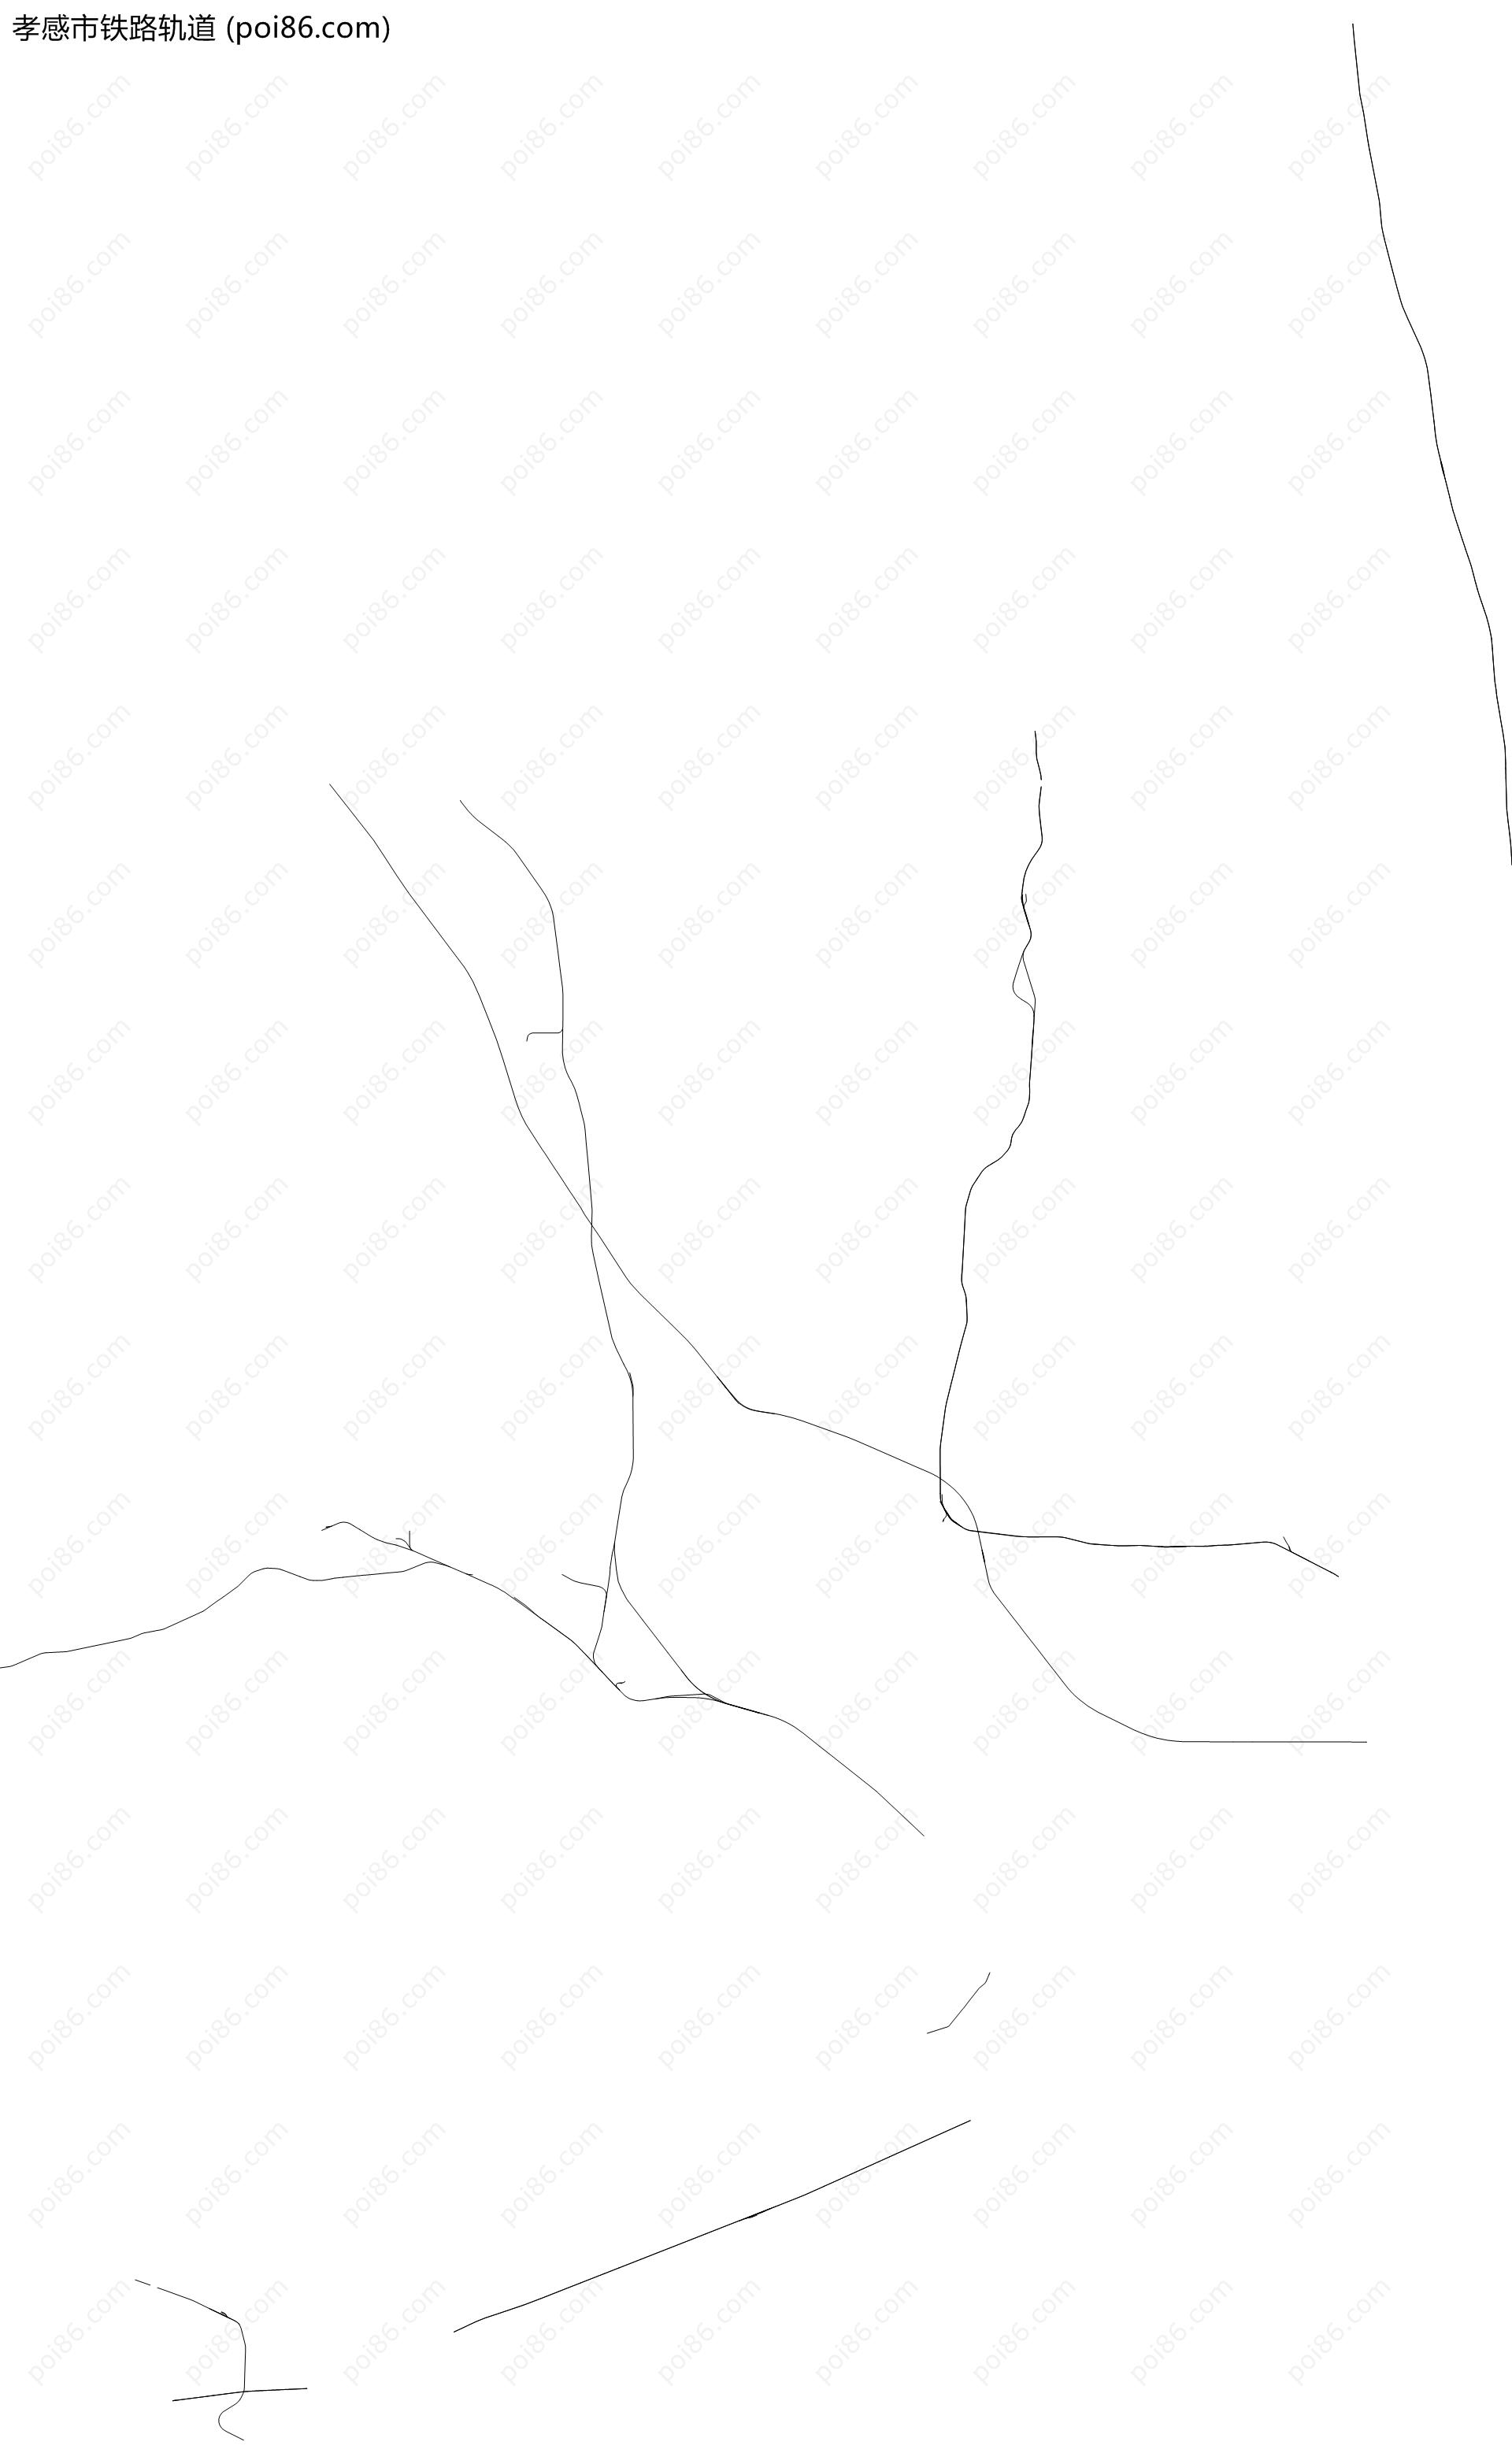 孝感市铁路轨道地图